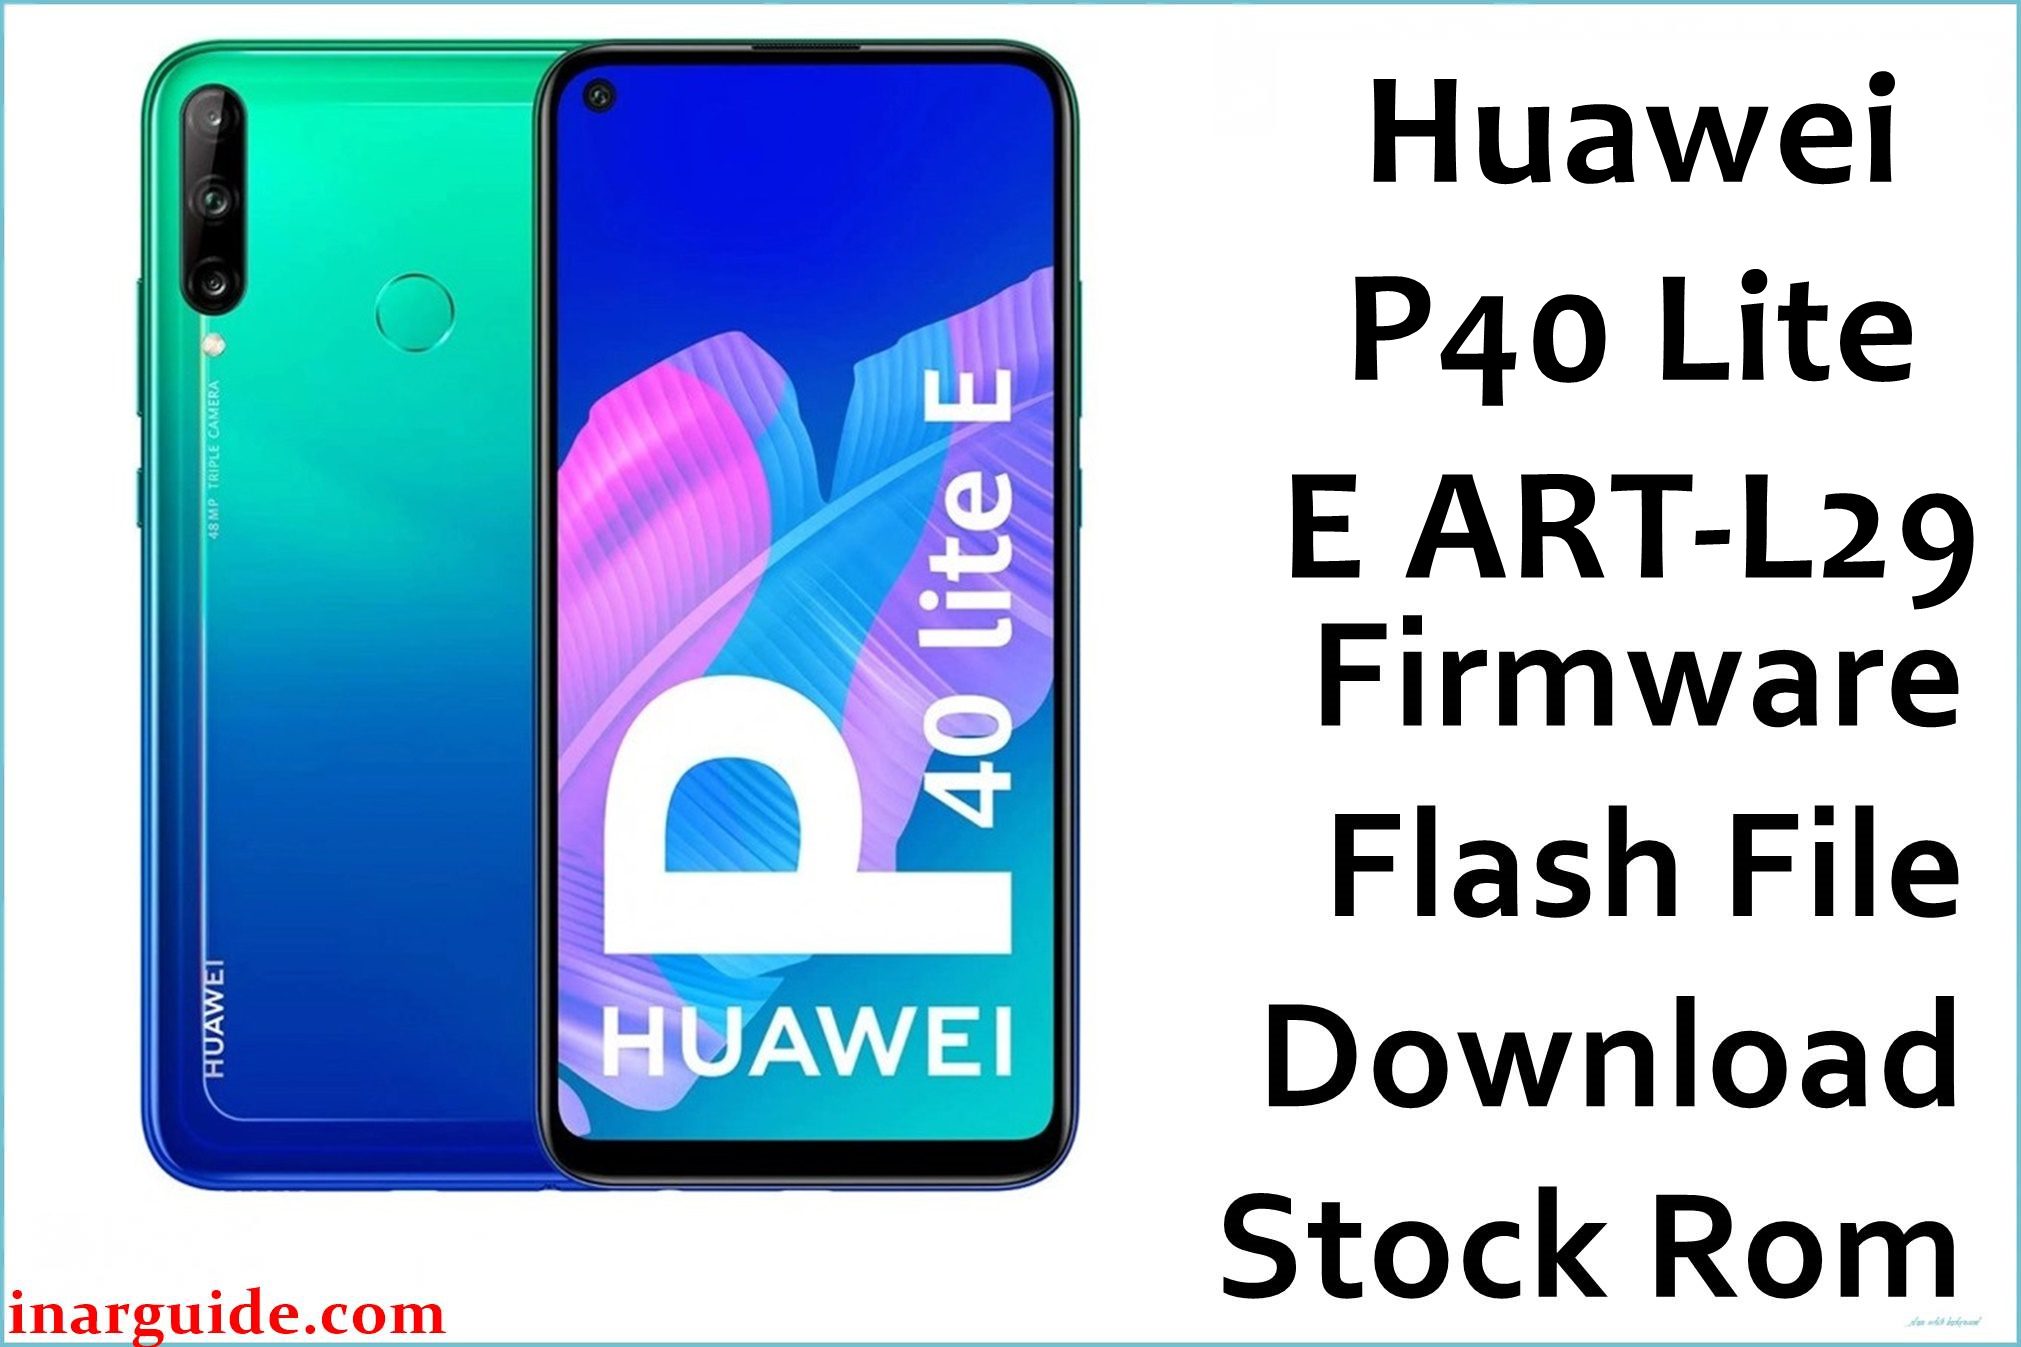 Huawei P40 Lite E ART L29